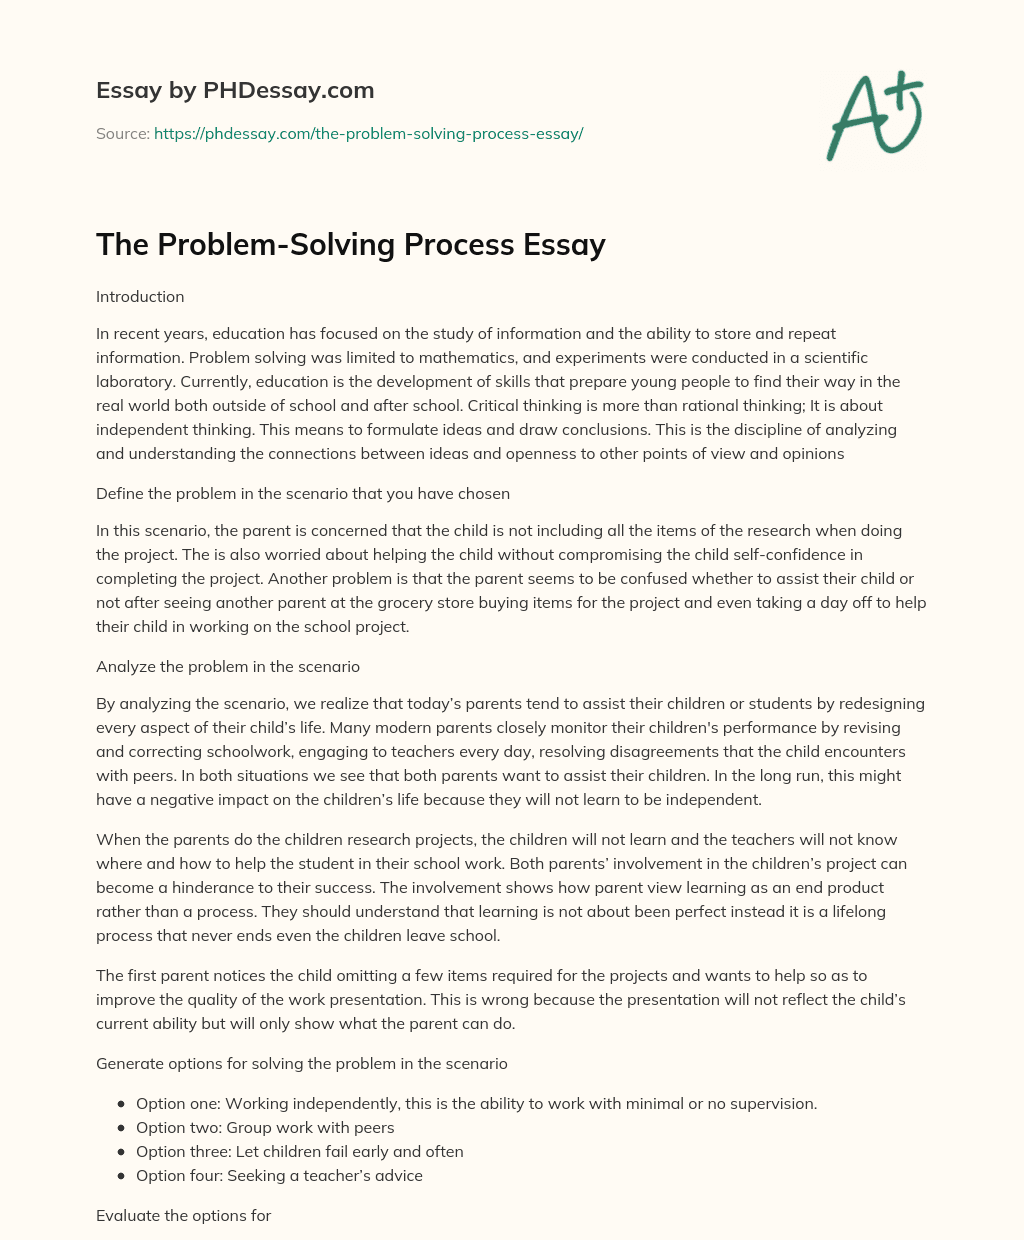 The Problem-Solving Process Essay essay